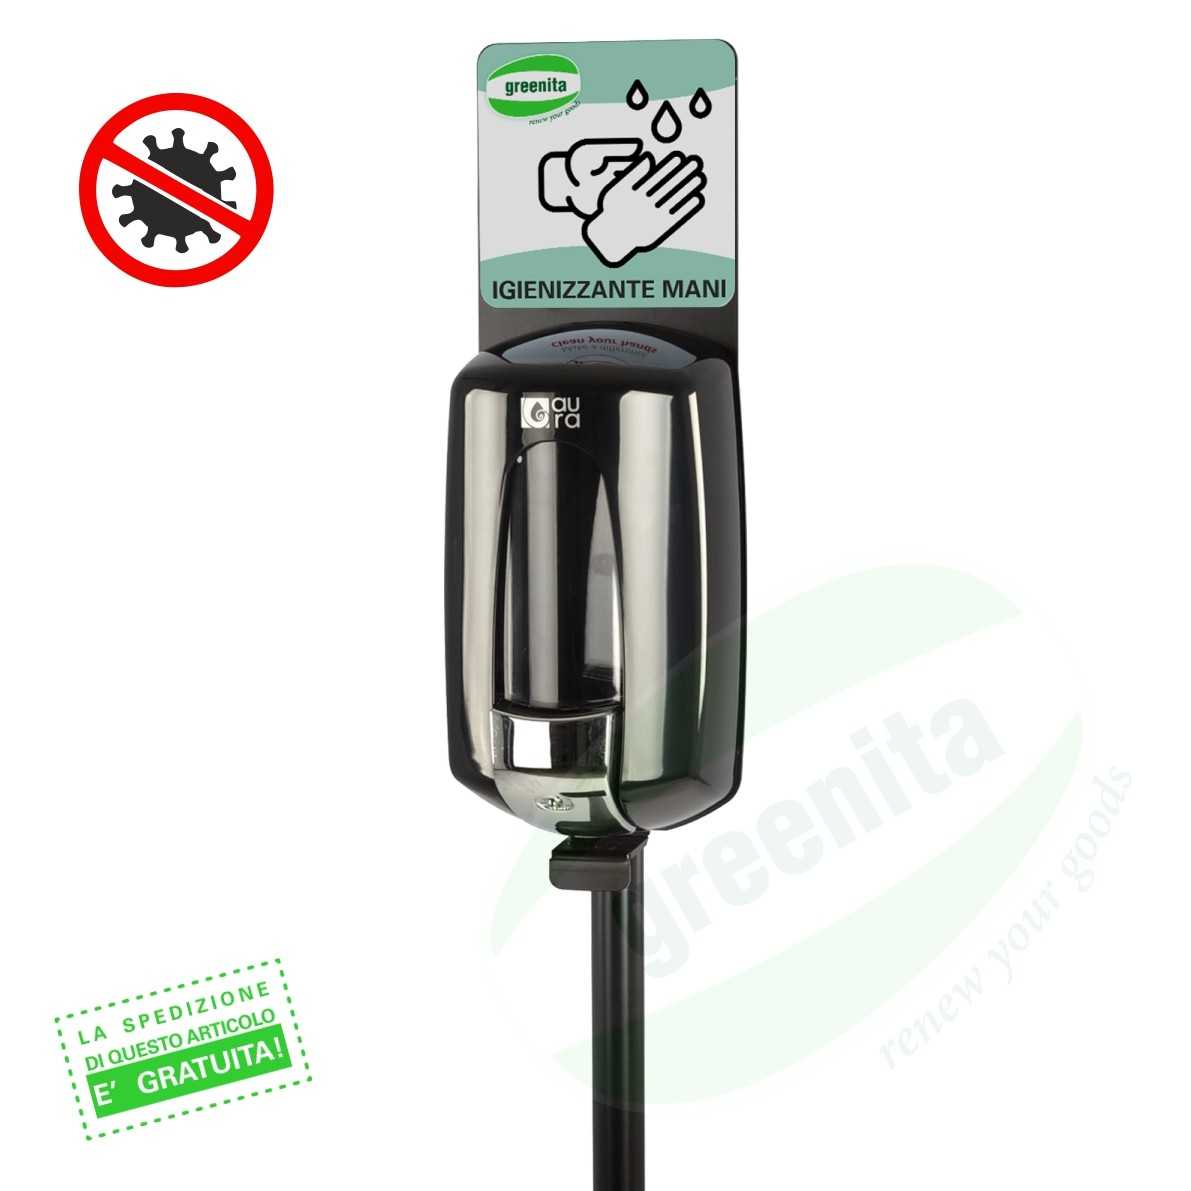 Colonnina Igienizzante con Dispenser per Gel Igienizzante/Disinfettante Mani - FINITURA METALLO CROMATO - 3